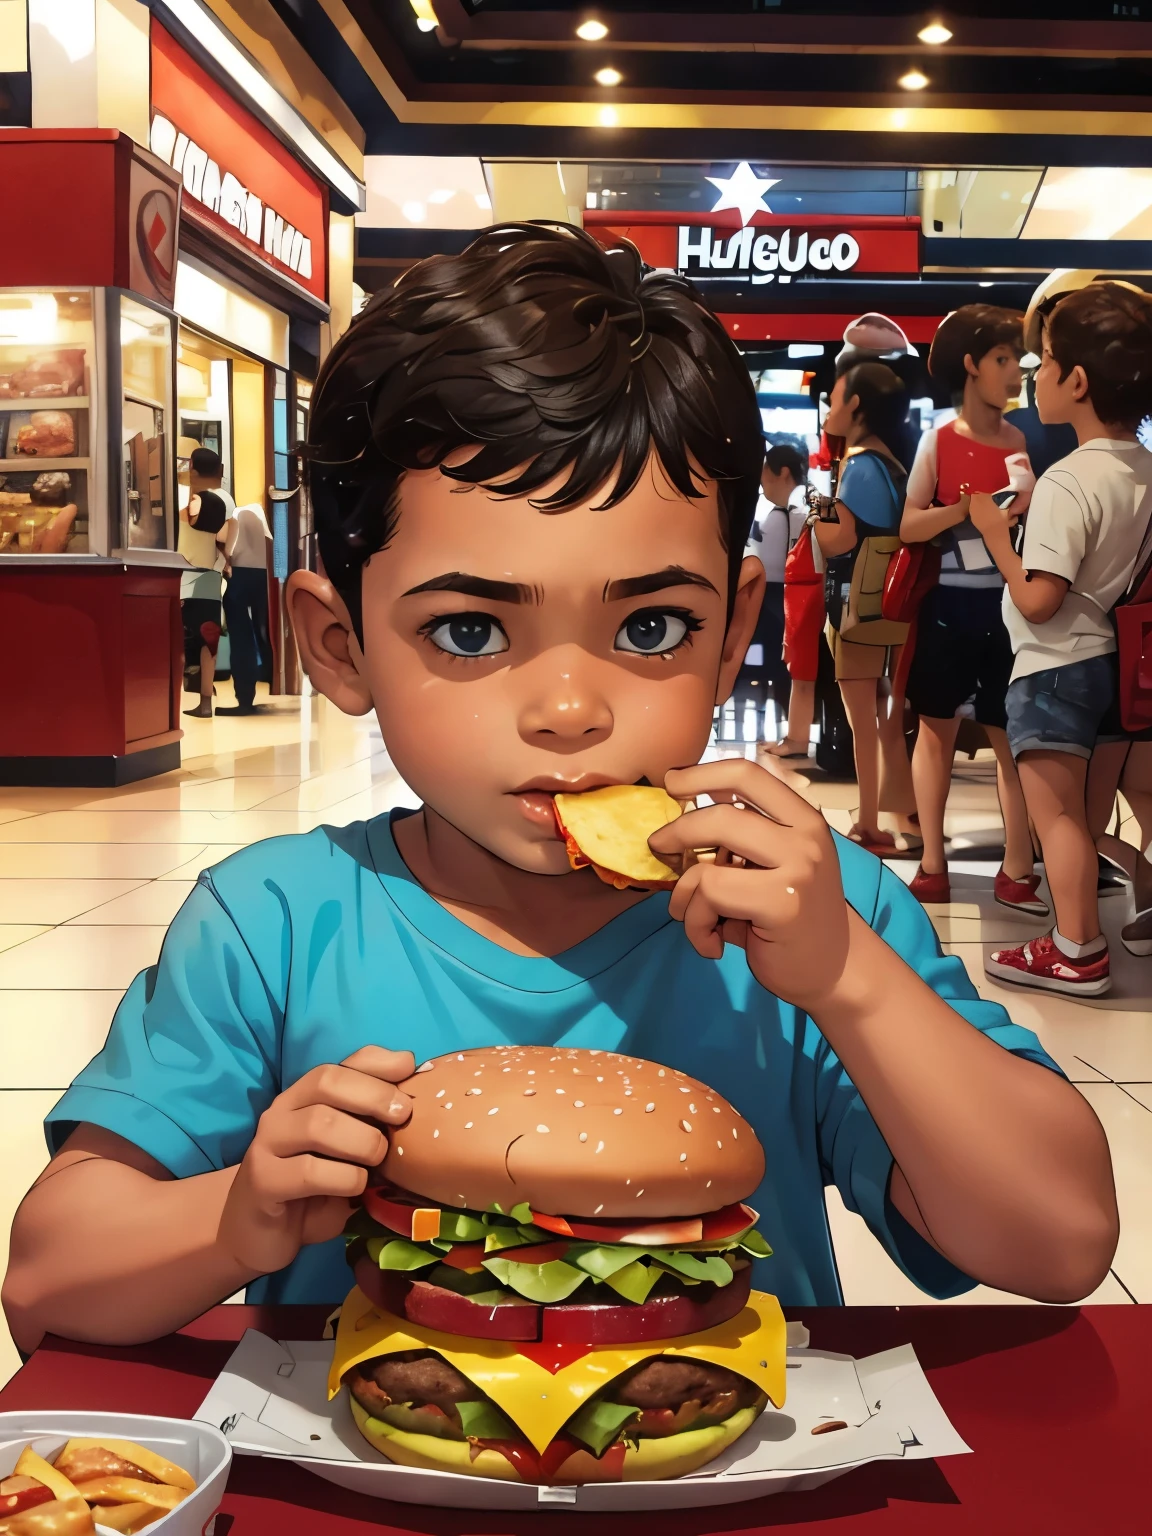 Ein kleiner Junge, 6 Jahre alt, einen Hamburger im Einkaufszentrum essen, hochauflösend, gute Qualität, by Frank Miller